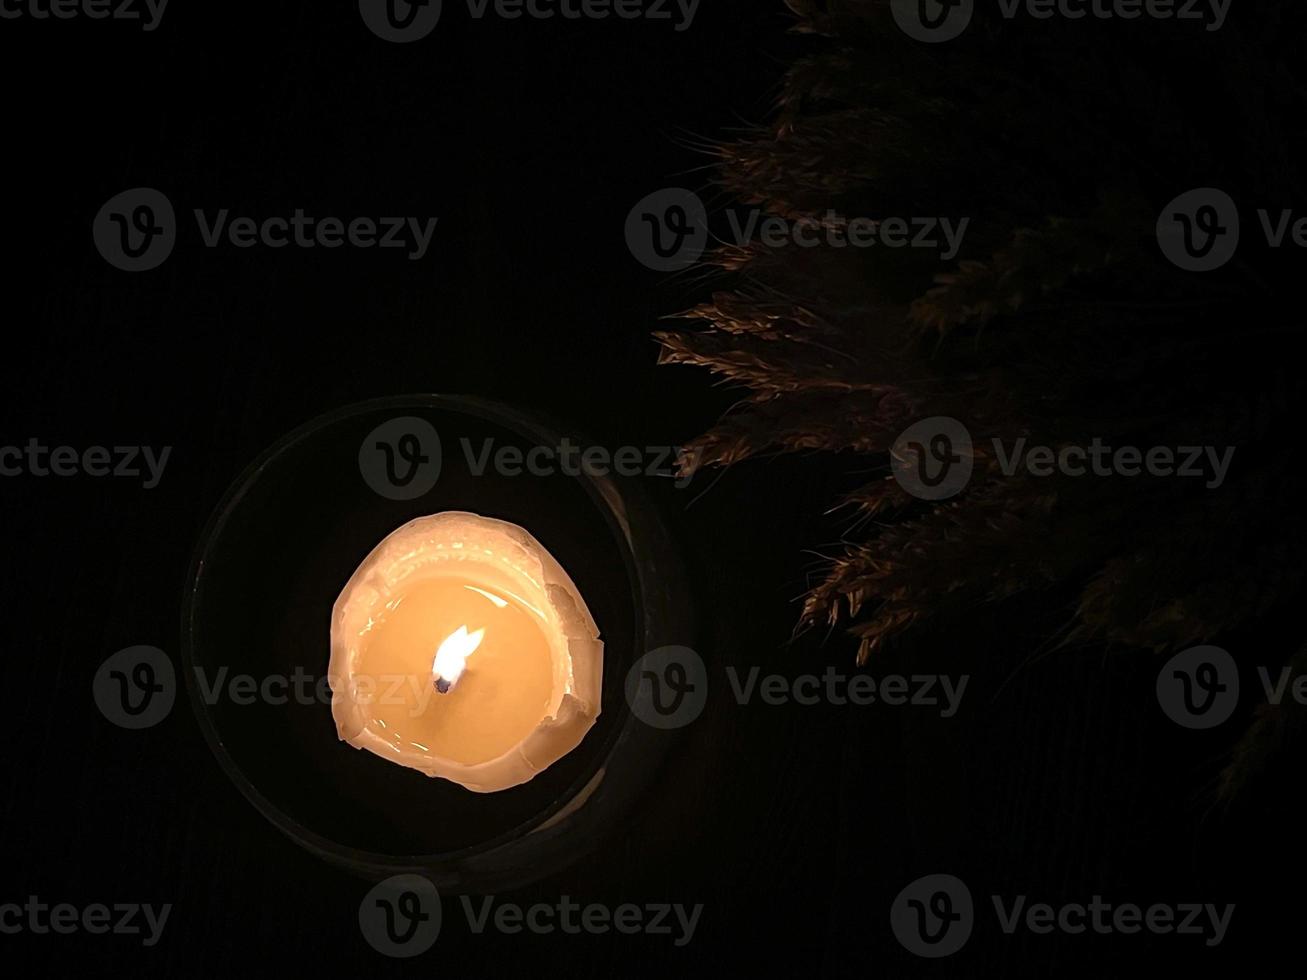 festliche tischdekoration, eine kerze in einem kerzenhalter aus glas, die im dunkeln brennt. Ansicht von oben. foto